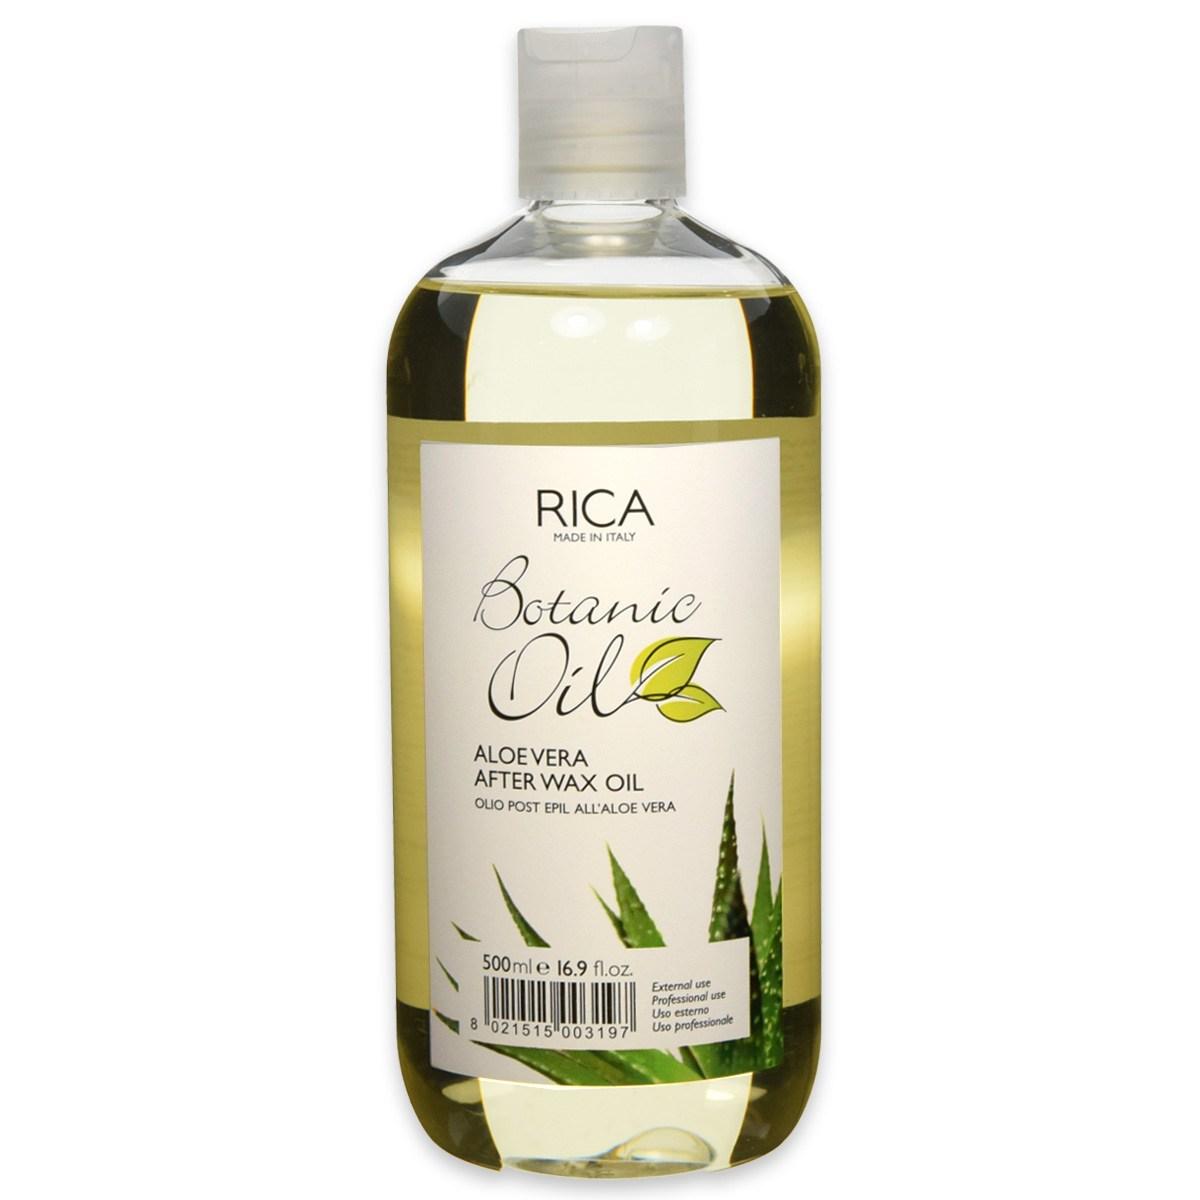 Rica botanic oil post epilazione aloe vera 500 ml